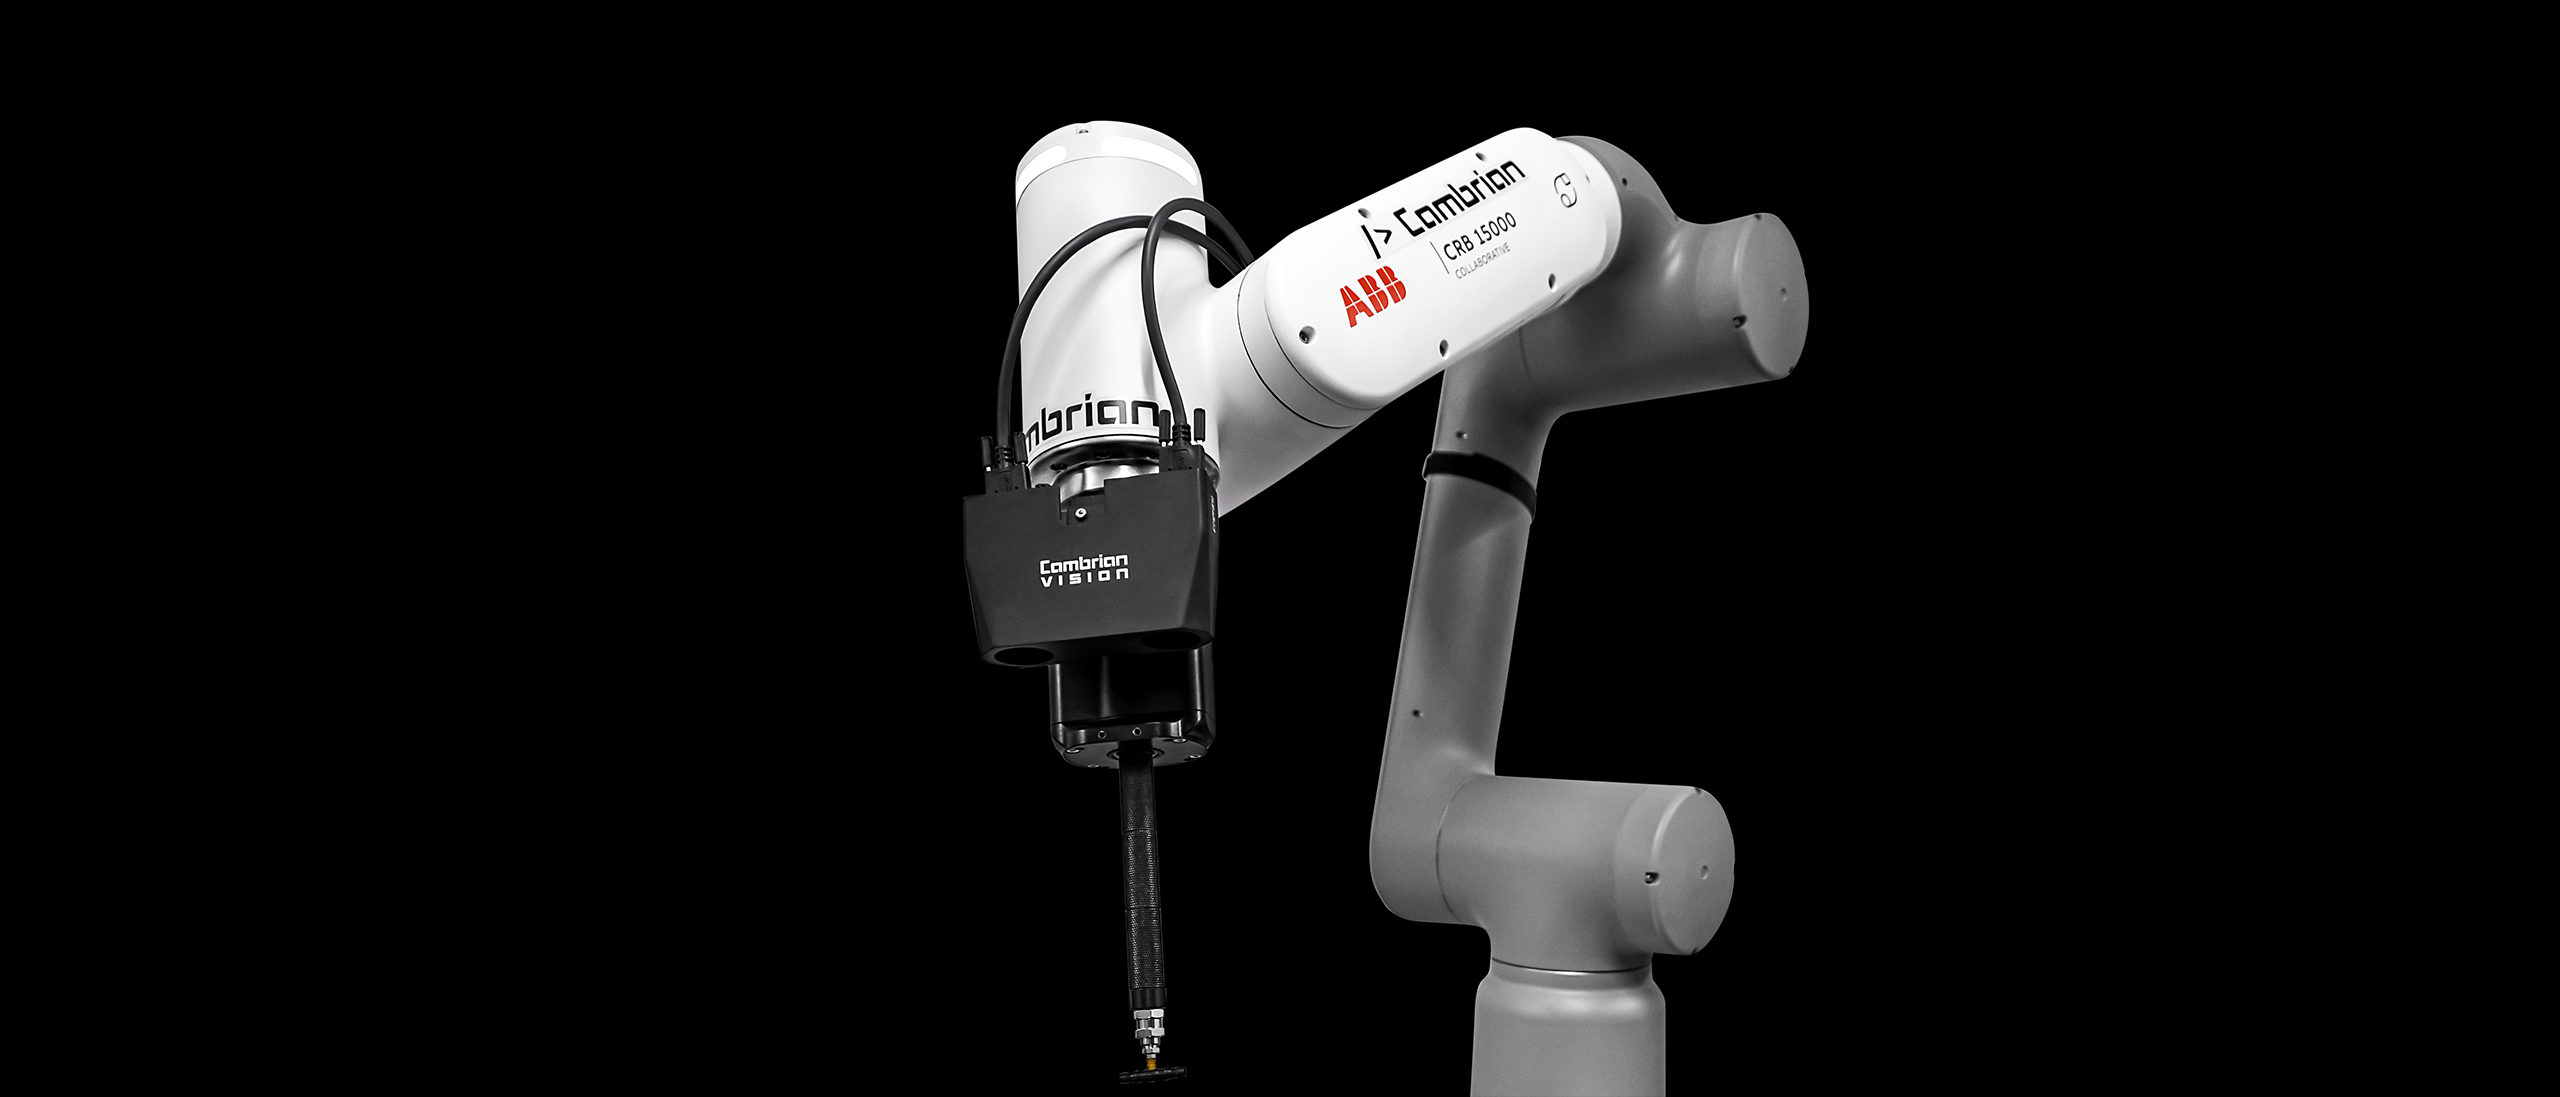 Motek Internationale Fachmesse für Produktions- und Montageautomatisierung Cambrian Robotics